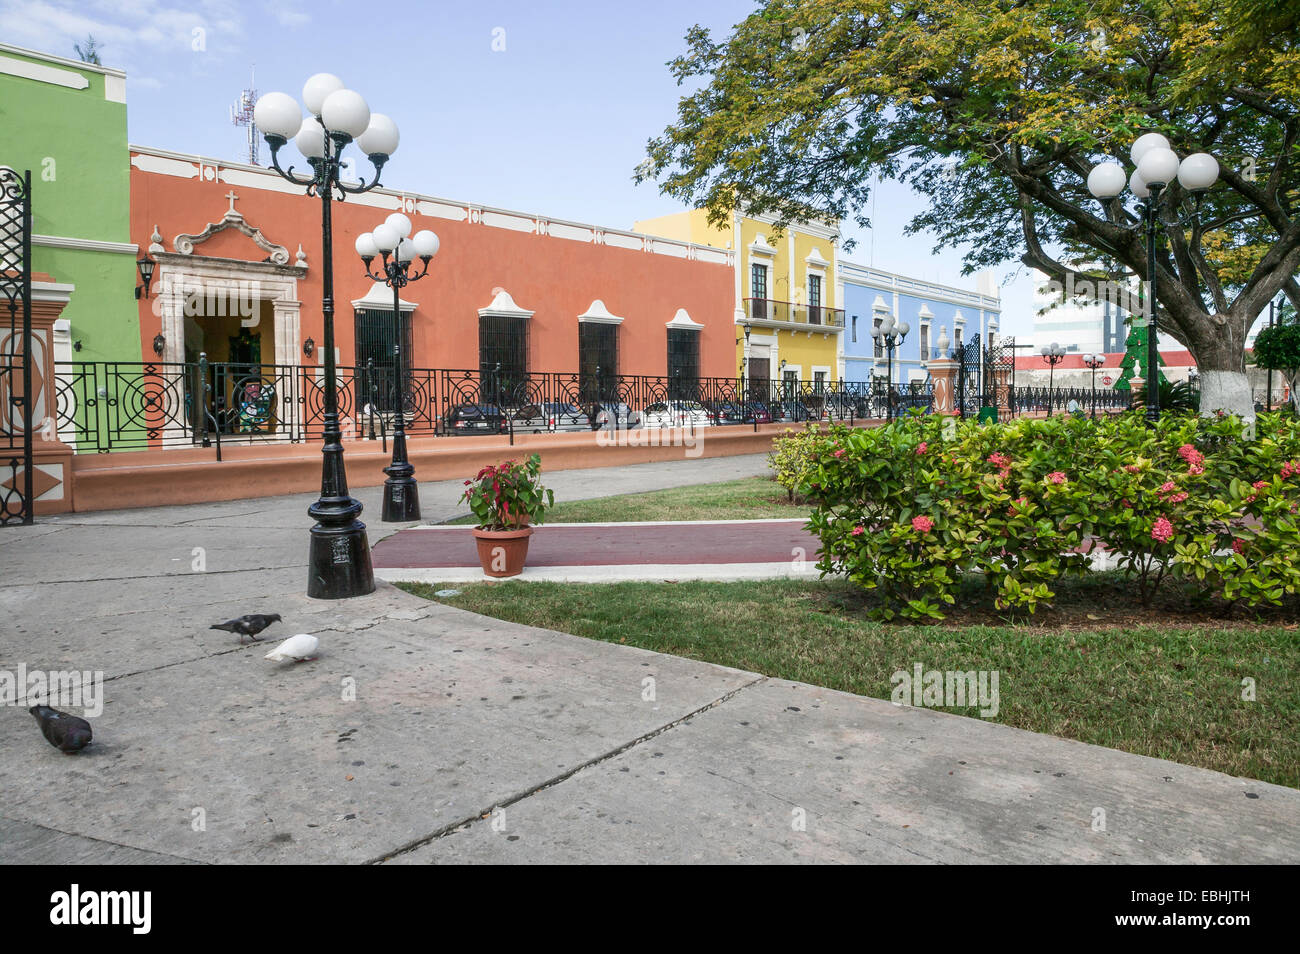 Ripristinato l'architettura coloniale Spagnola con ornati in ferro battuto recinzione attraverso da un centro parco nel centro storico di Campeche, Messico. Foto Stock